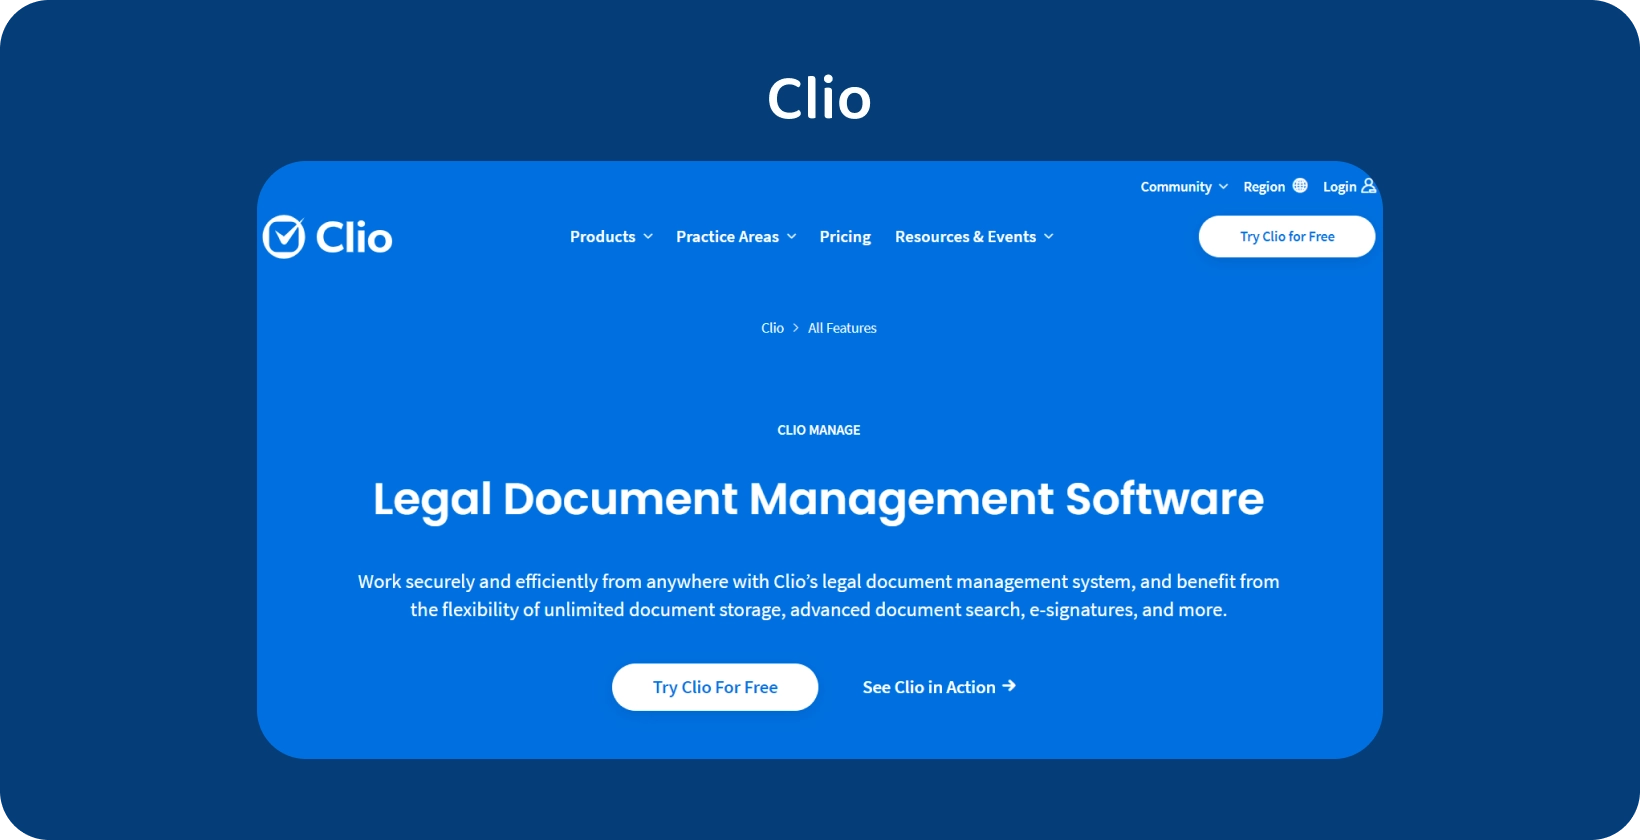 A interface de usuário da Clio apresenta seu Software de Gerenciamento de Documentos Legais, otimizando o tratamento organizado de registros.